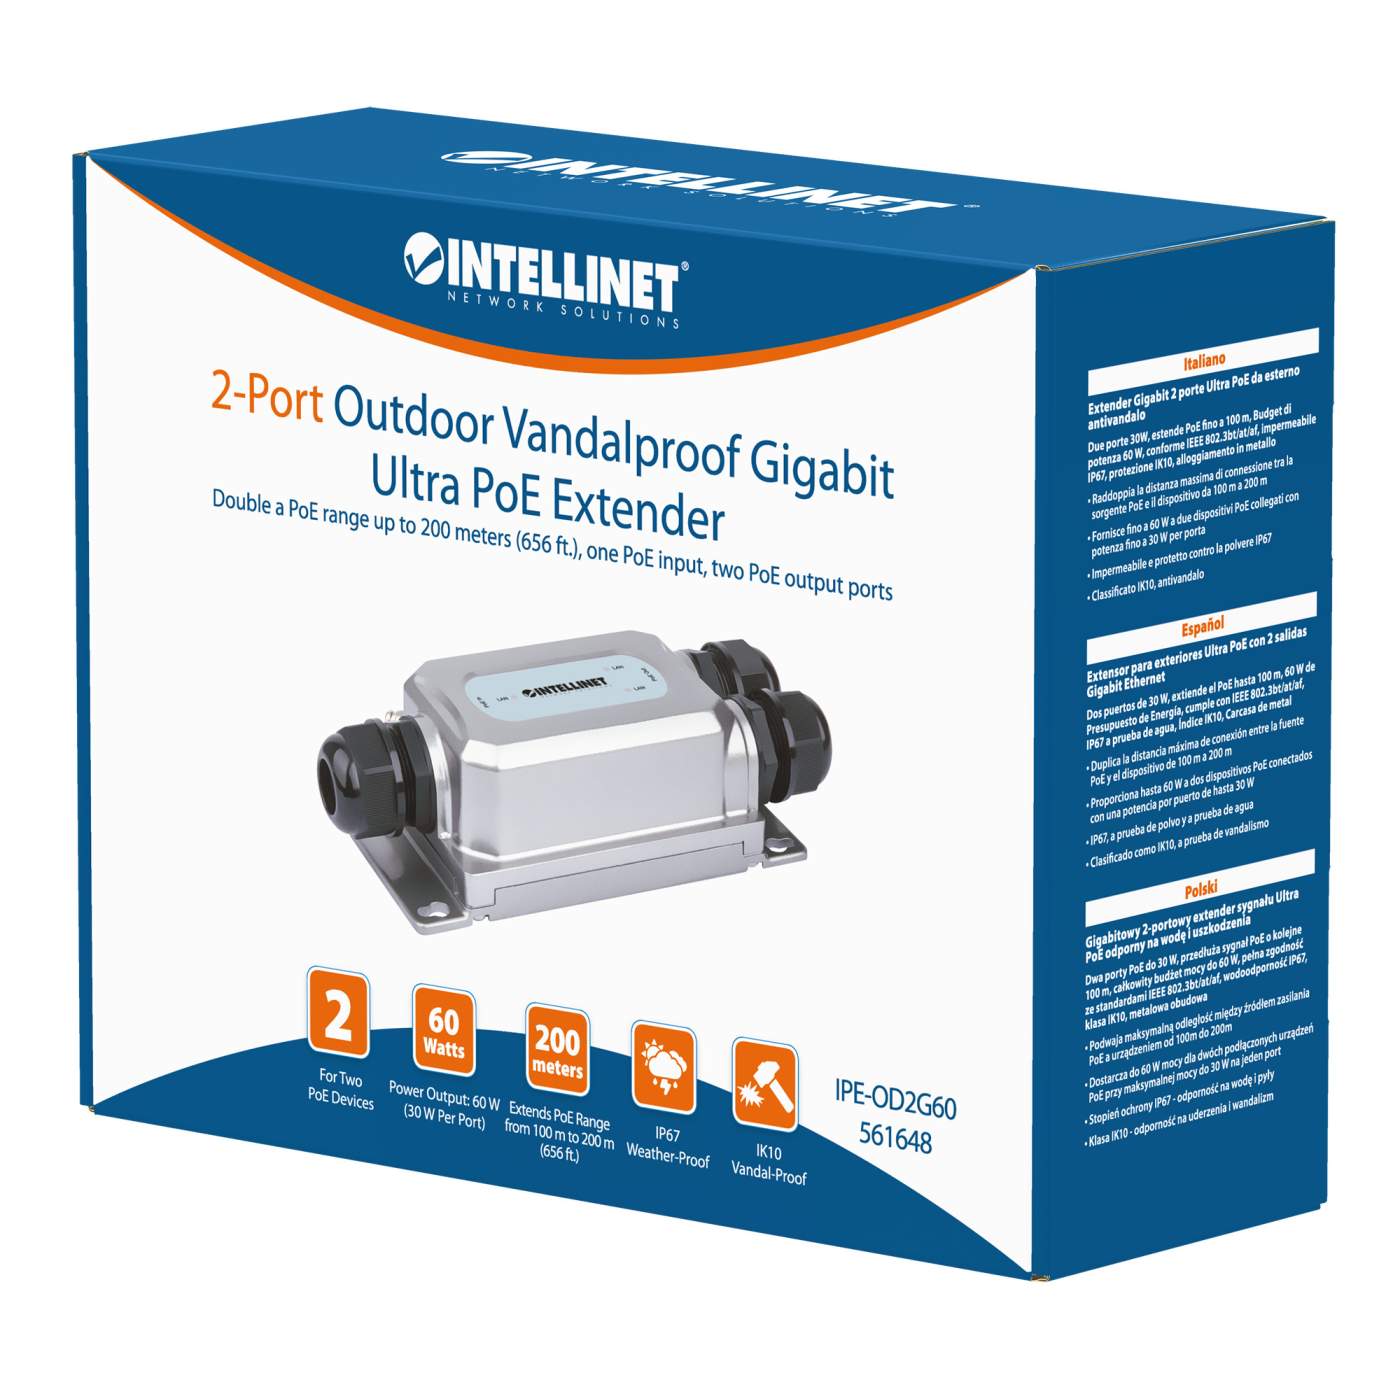 Intellinet 4-Port Gigabit Ultra PoE Extender (561617) – Intellinet Europe